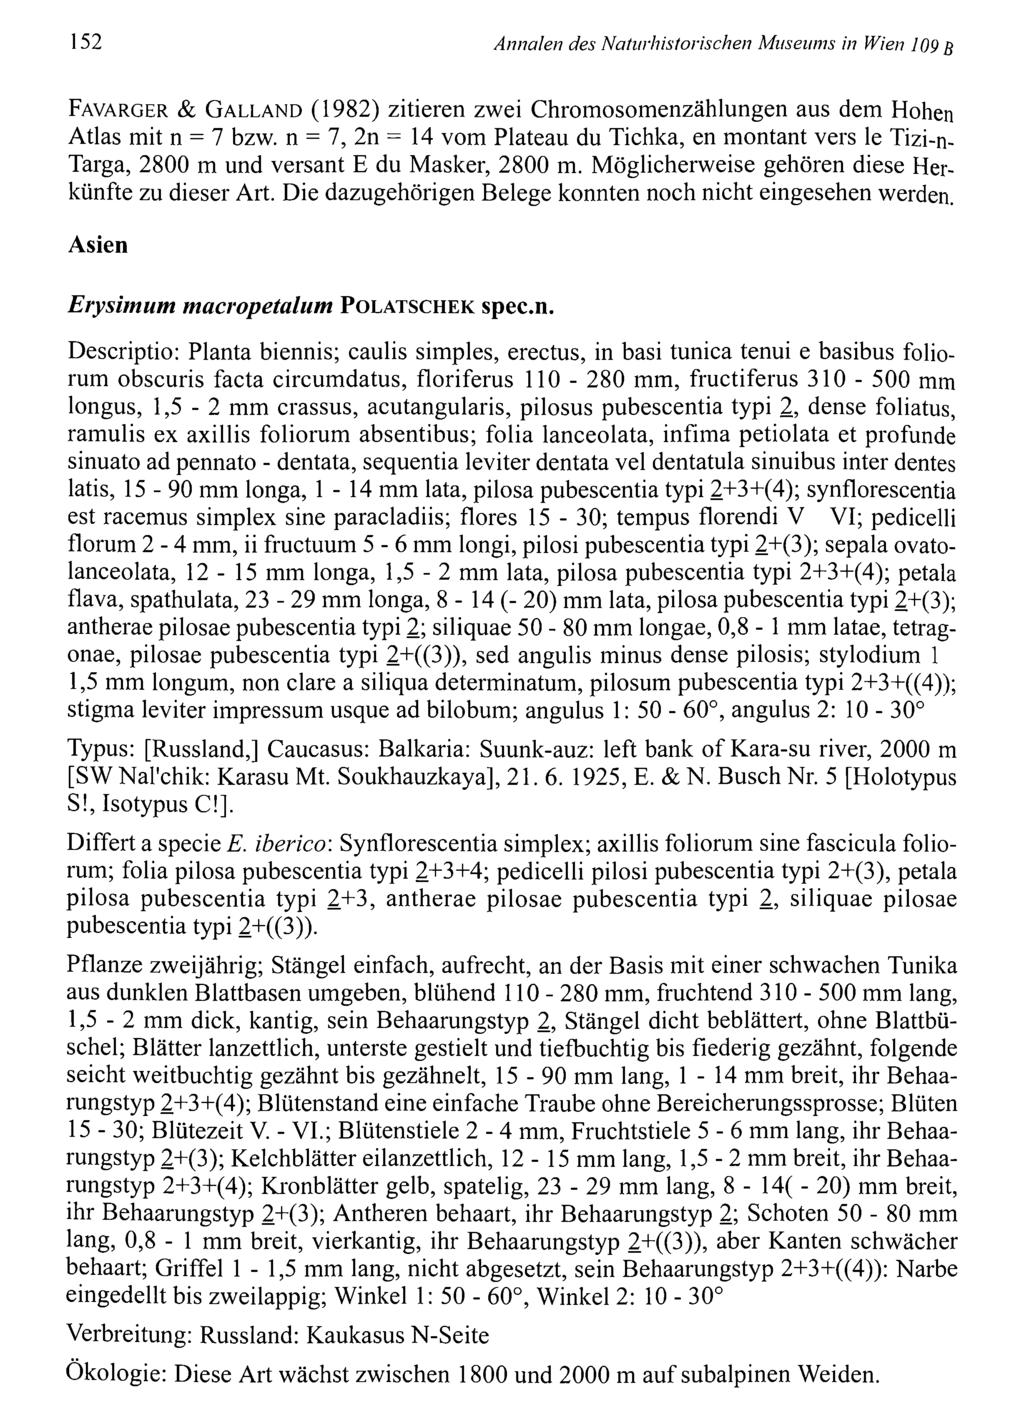 152 Annalen des Natiirhistorischen Museums in Wien 109 B F a v a r g e r & G a l l a n d (1982) zitieren zwei Chromosomenzählungen aus dem Hohen Atlas mit n = 7 bzw.